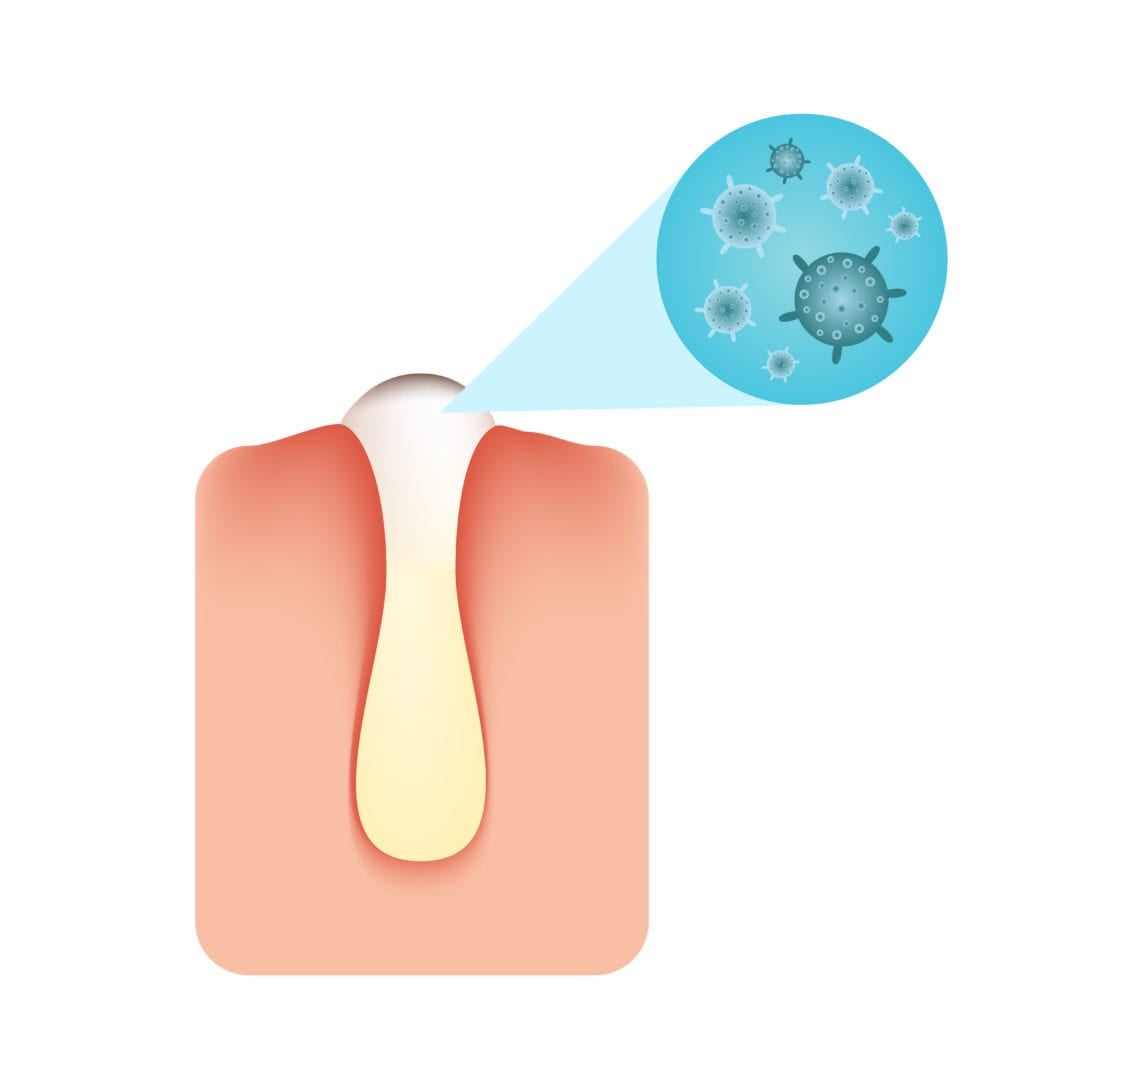 Acne bacterie | anatomy van de huid